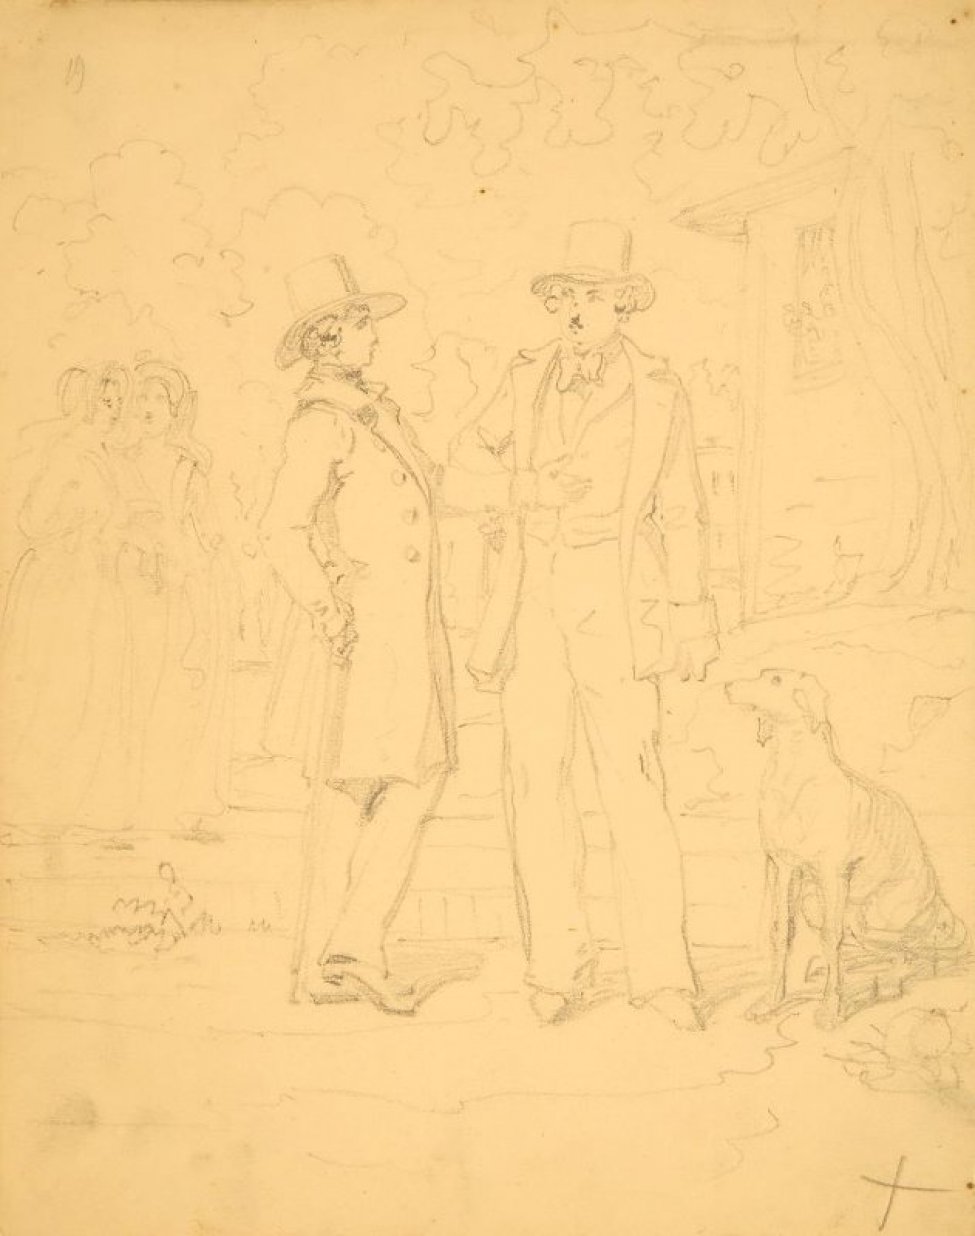 Изображена жанровая сценка на улице. В центре композиции - стоят два молодых человека в шляпах и фраках, справа от них сидит собака, вдали слева показаны фигуры двух молодых женщин.